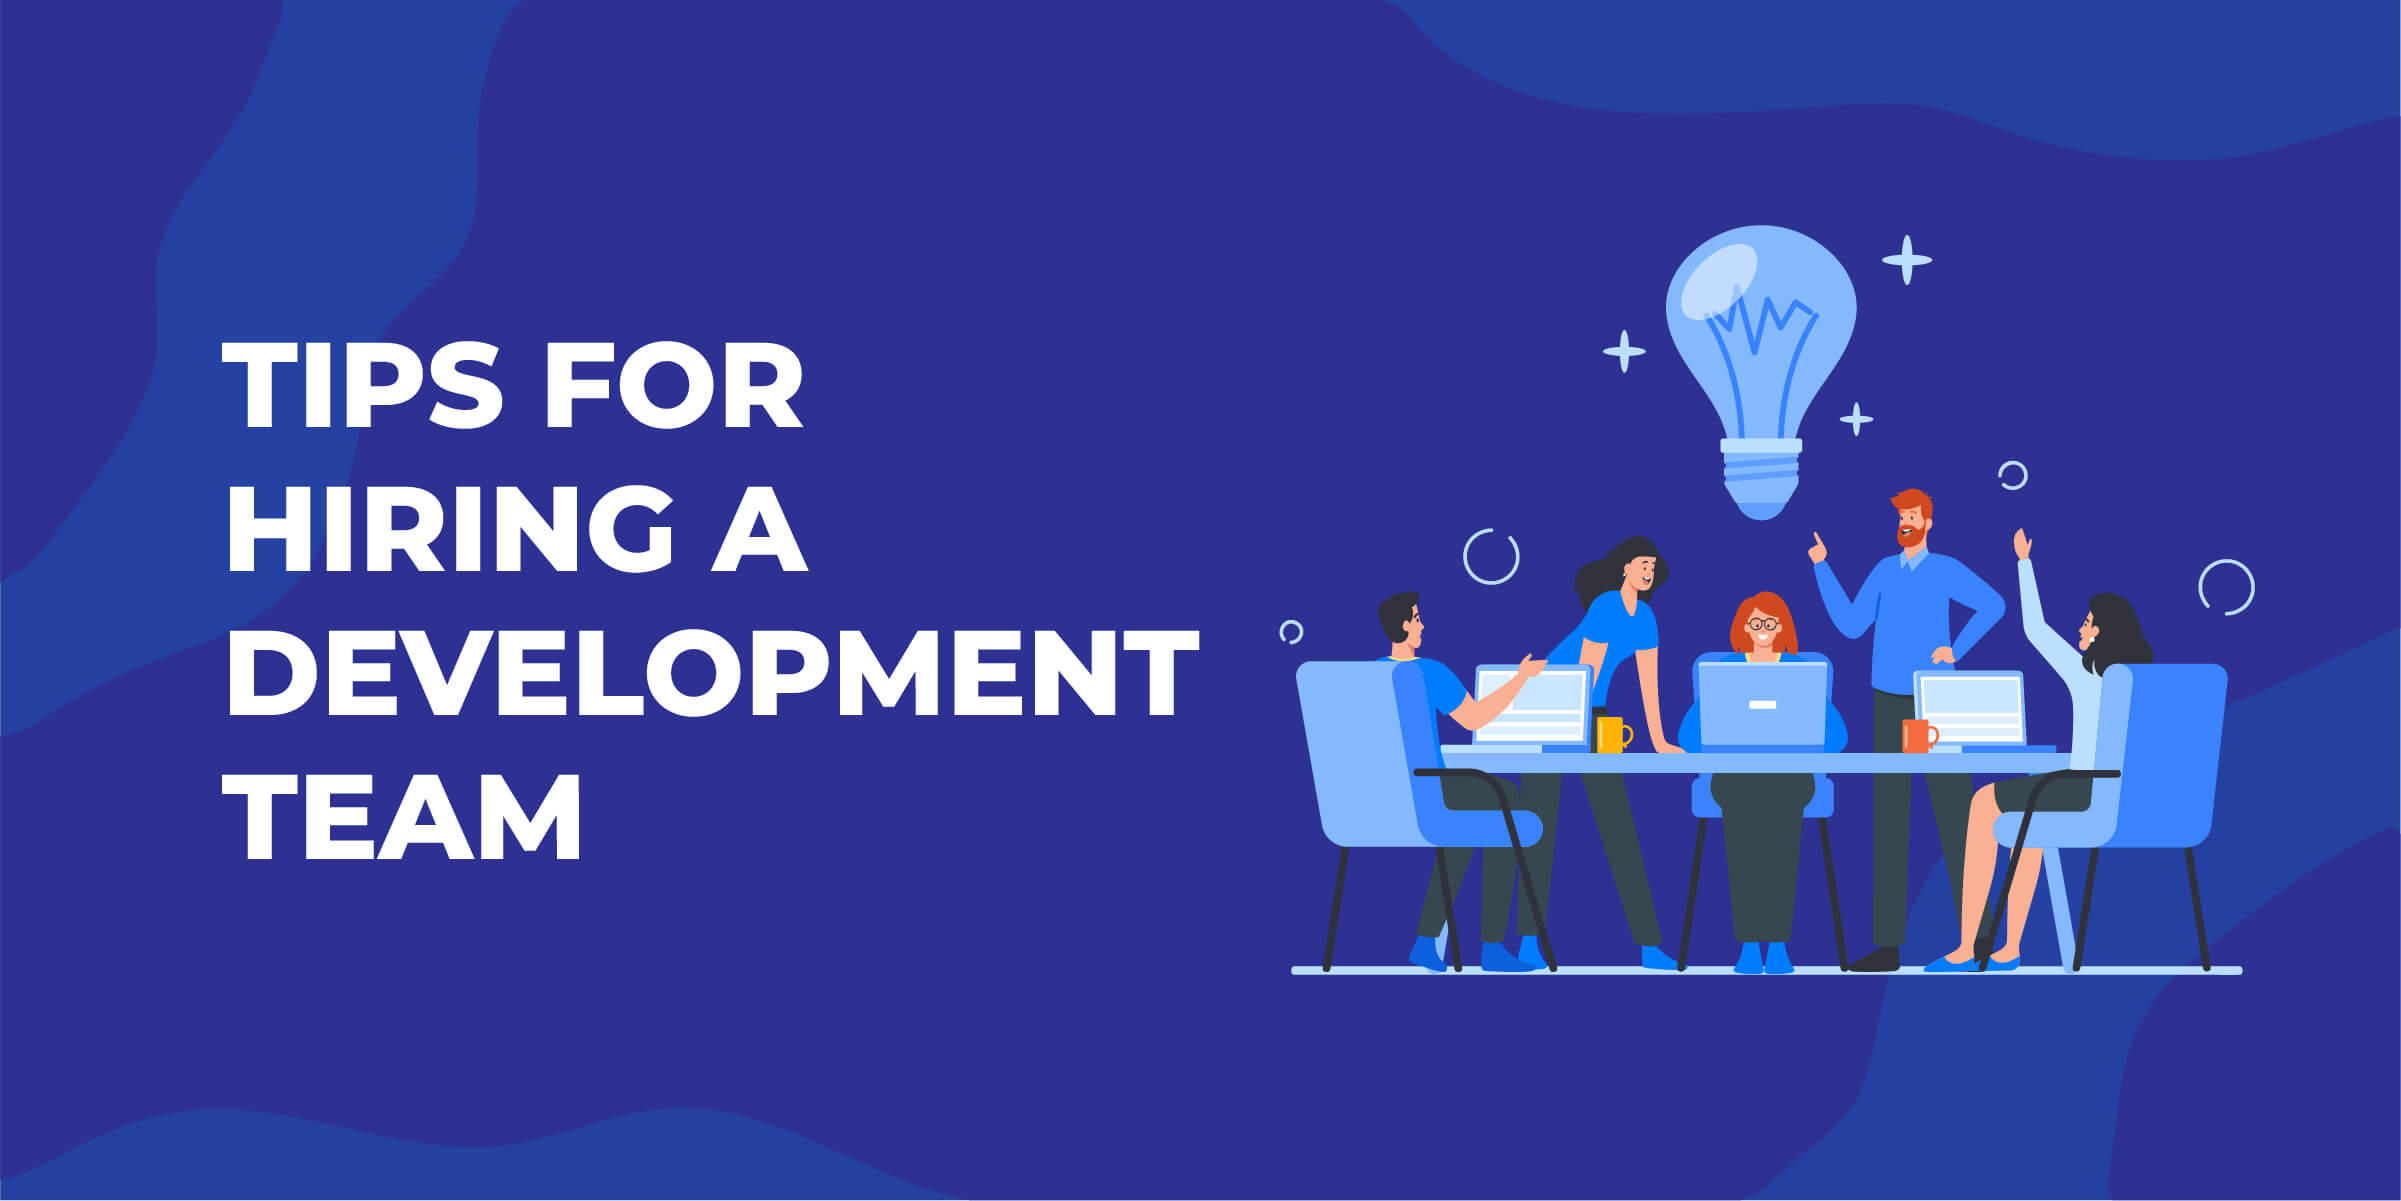 Tips for Hiring Development Team